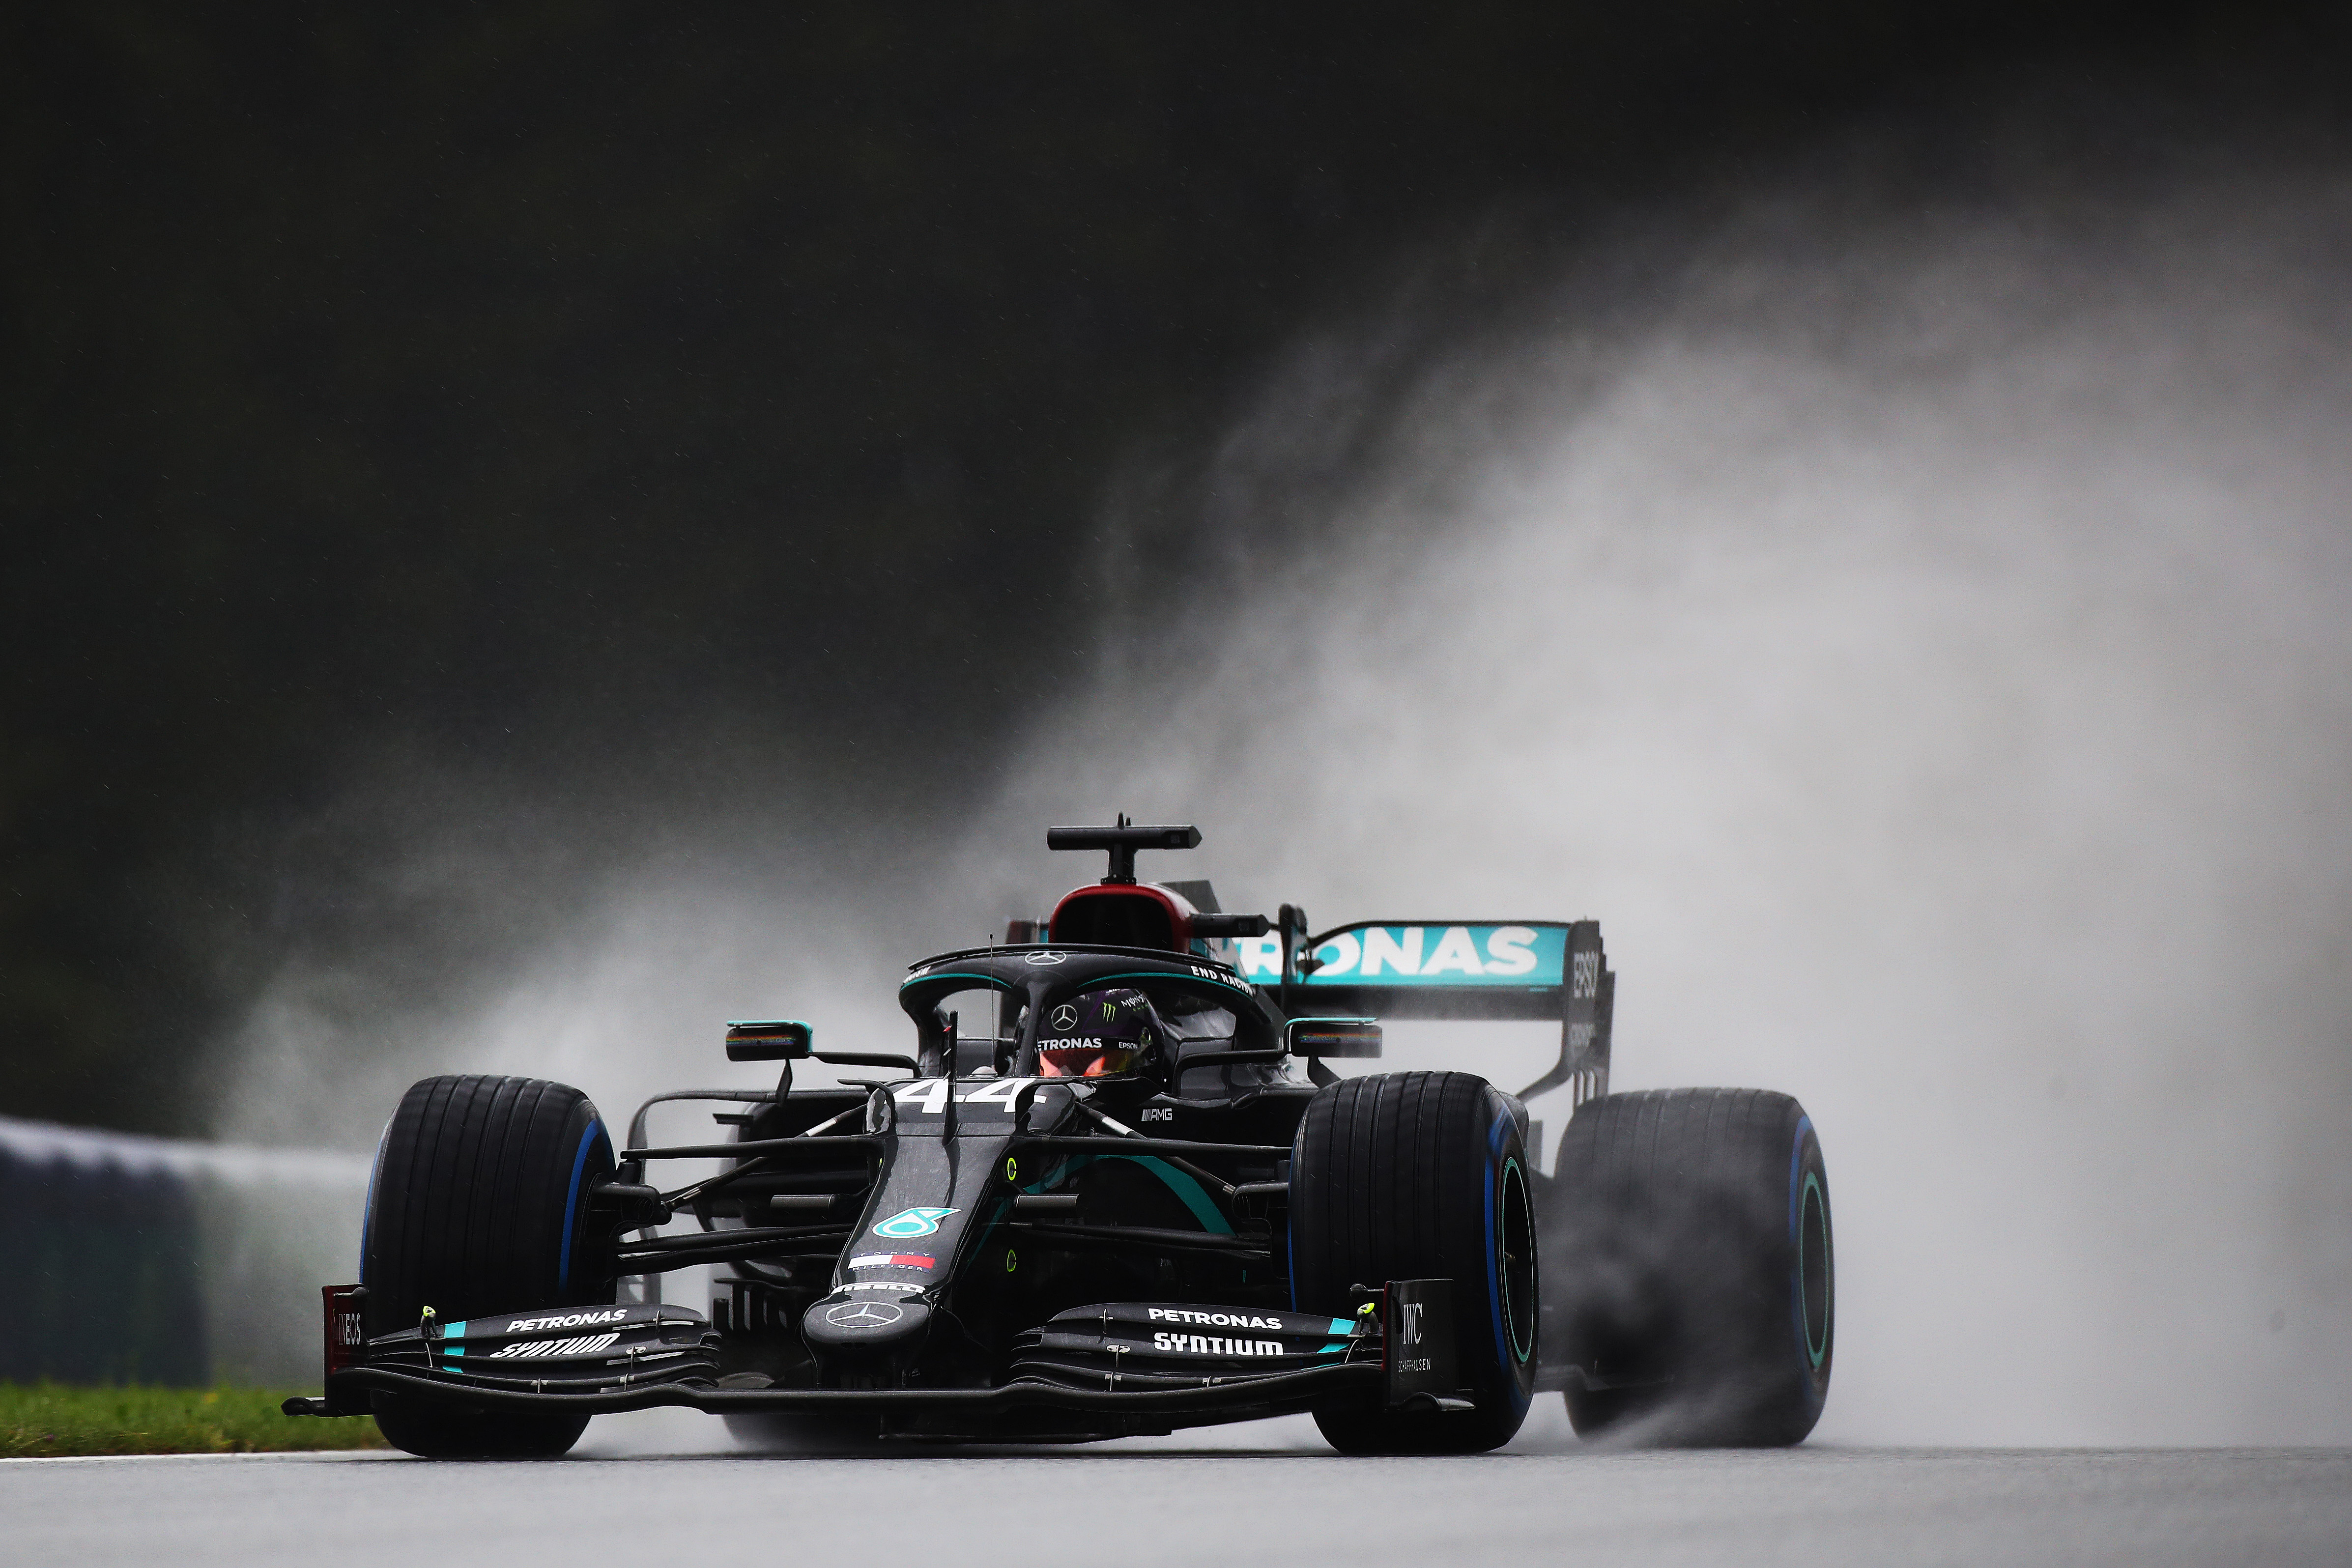 LIVE VIDEO Marele Premiu al Stiriei, de la ora 16:00, pe Digi Sport 1. Lewis Hamilton, în pole position